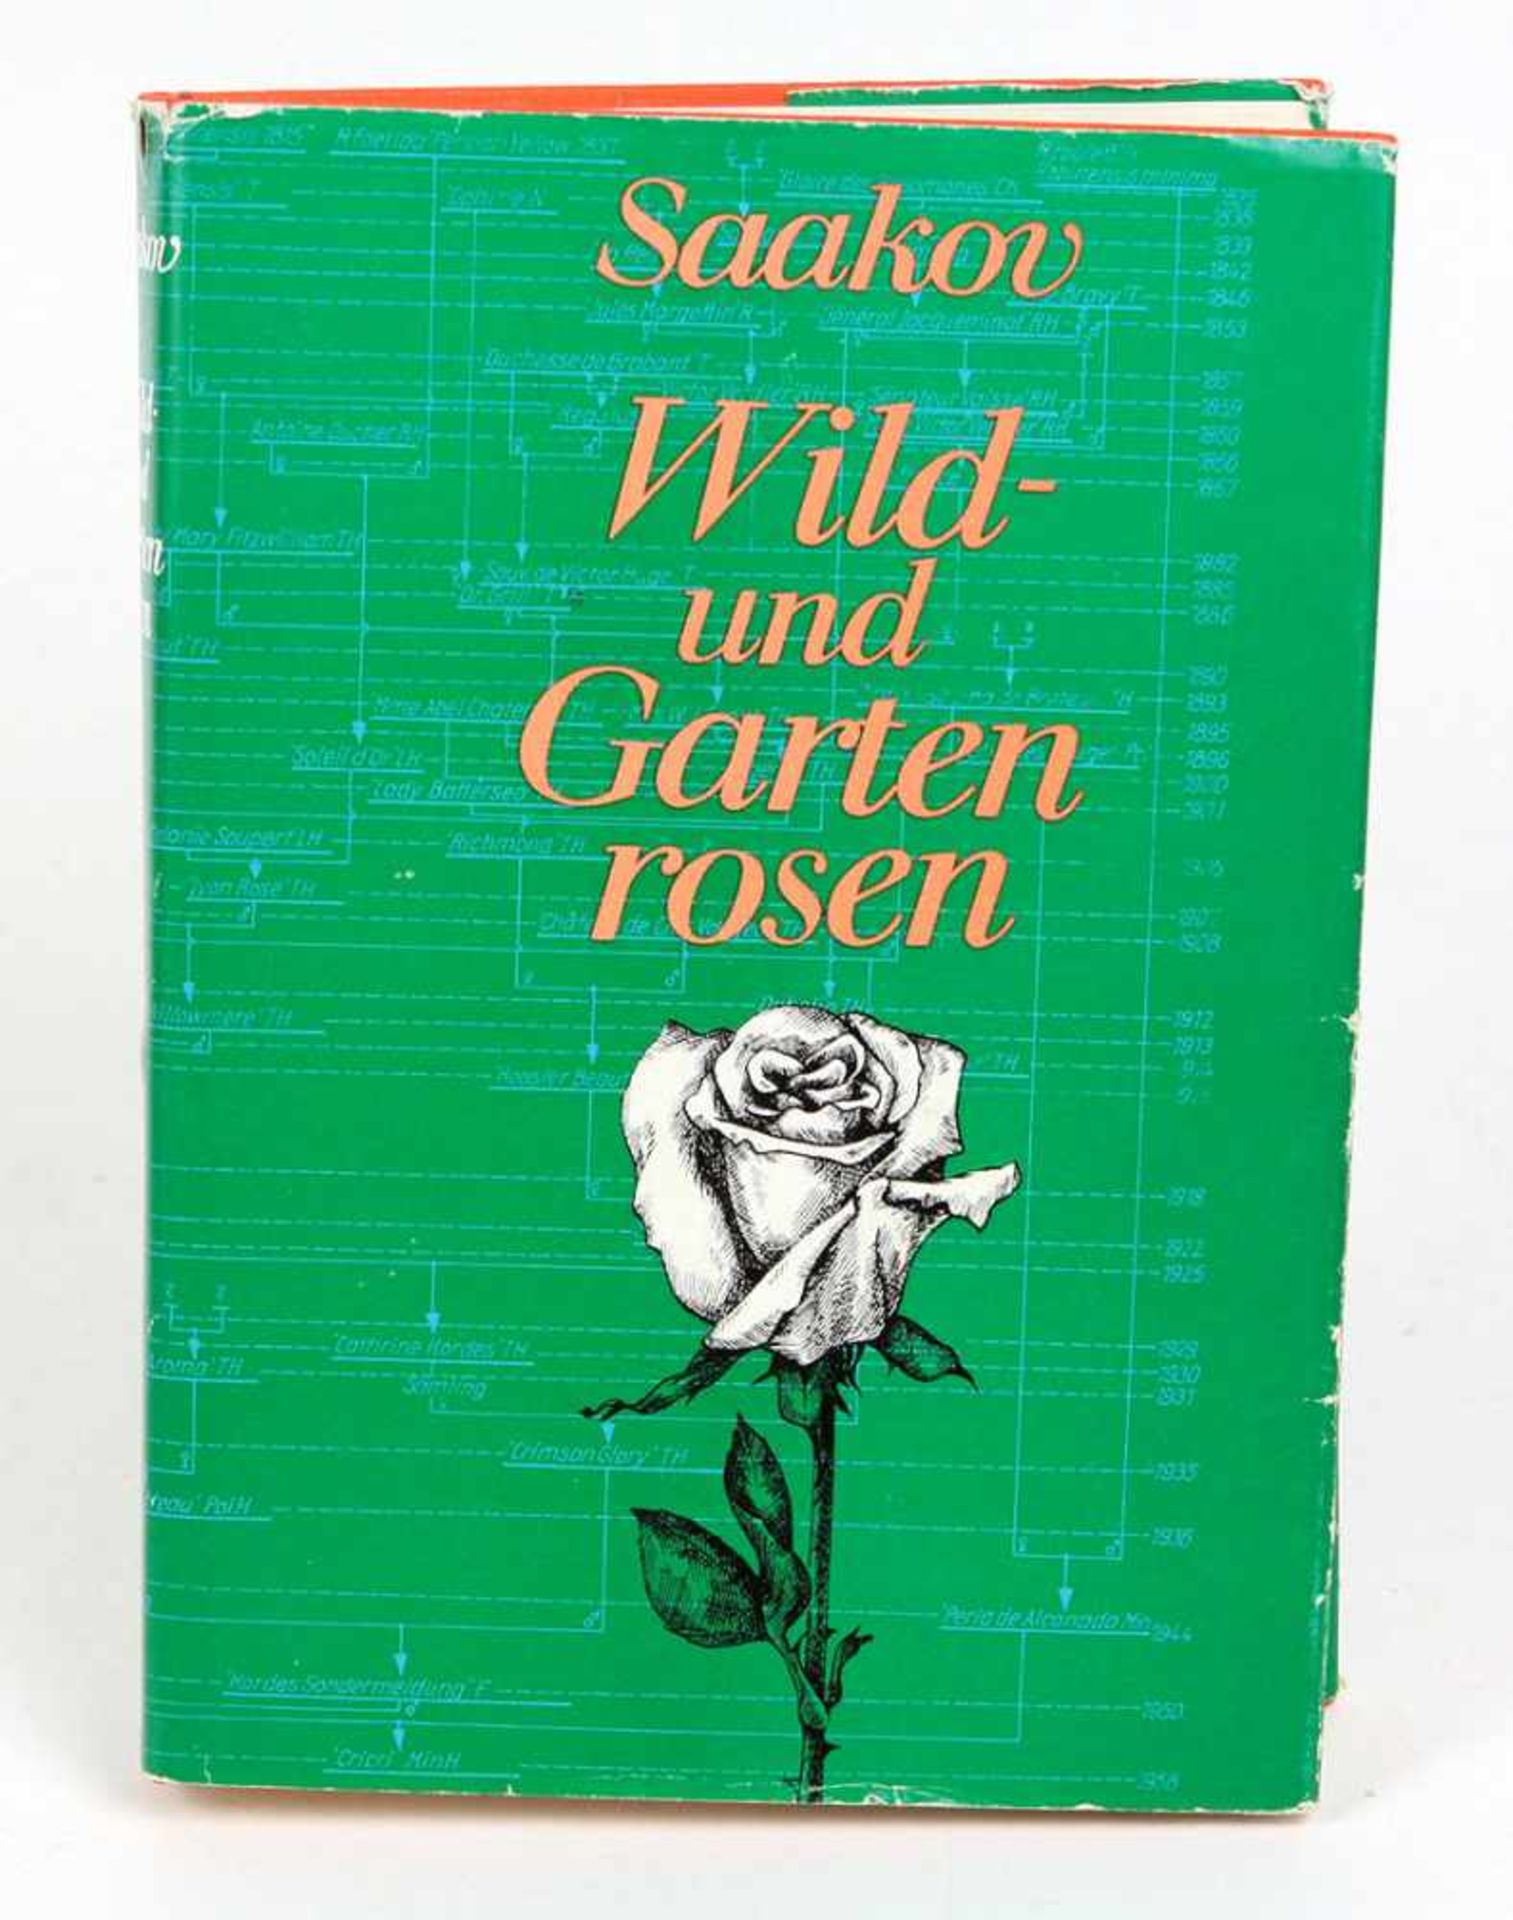 Wild- und Gartenrosenv. S. G. Saakov, Herkunft, Abstammung, Entwicklung, Verwendung, 432 S. m. 93